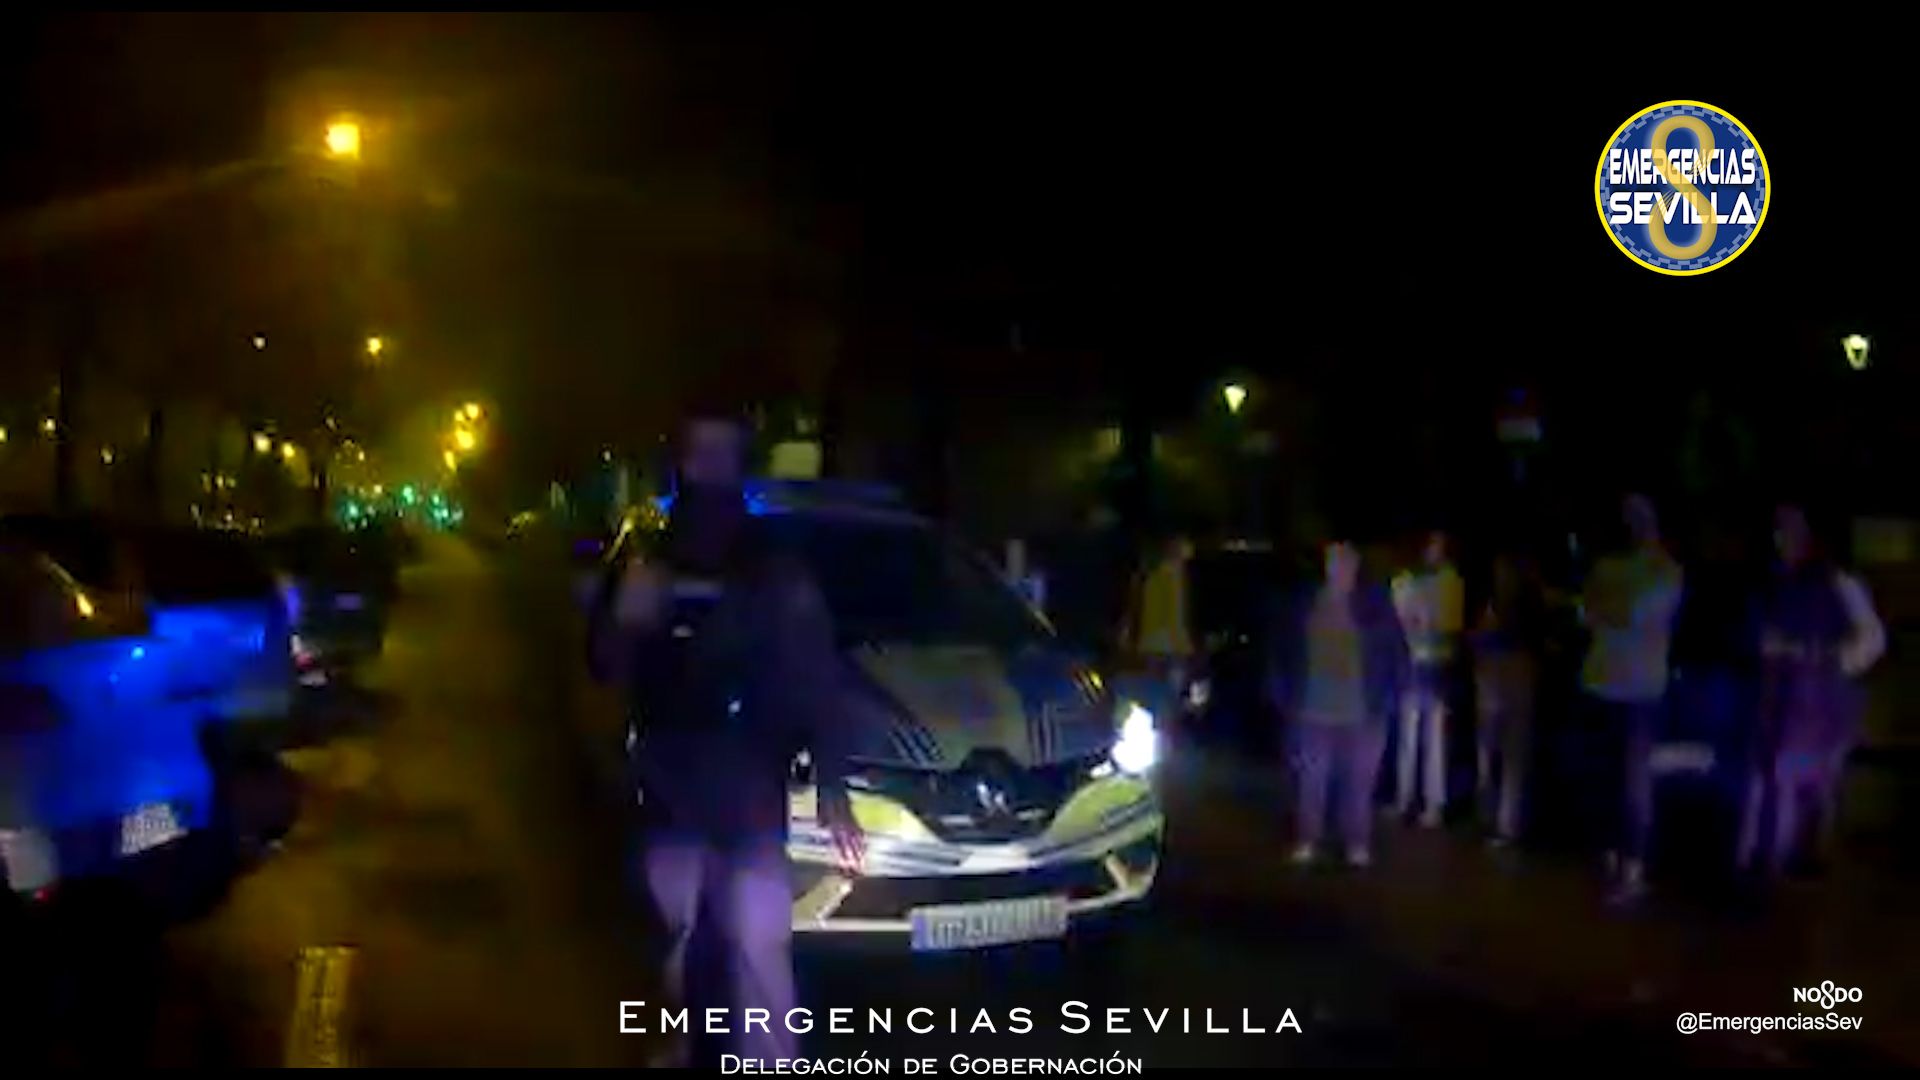 Mata en Sevilla a un joven de 18 años mientras conducía borracho y drogado, y se da a la fuga.